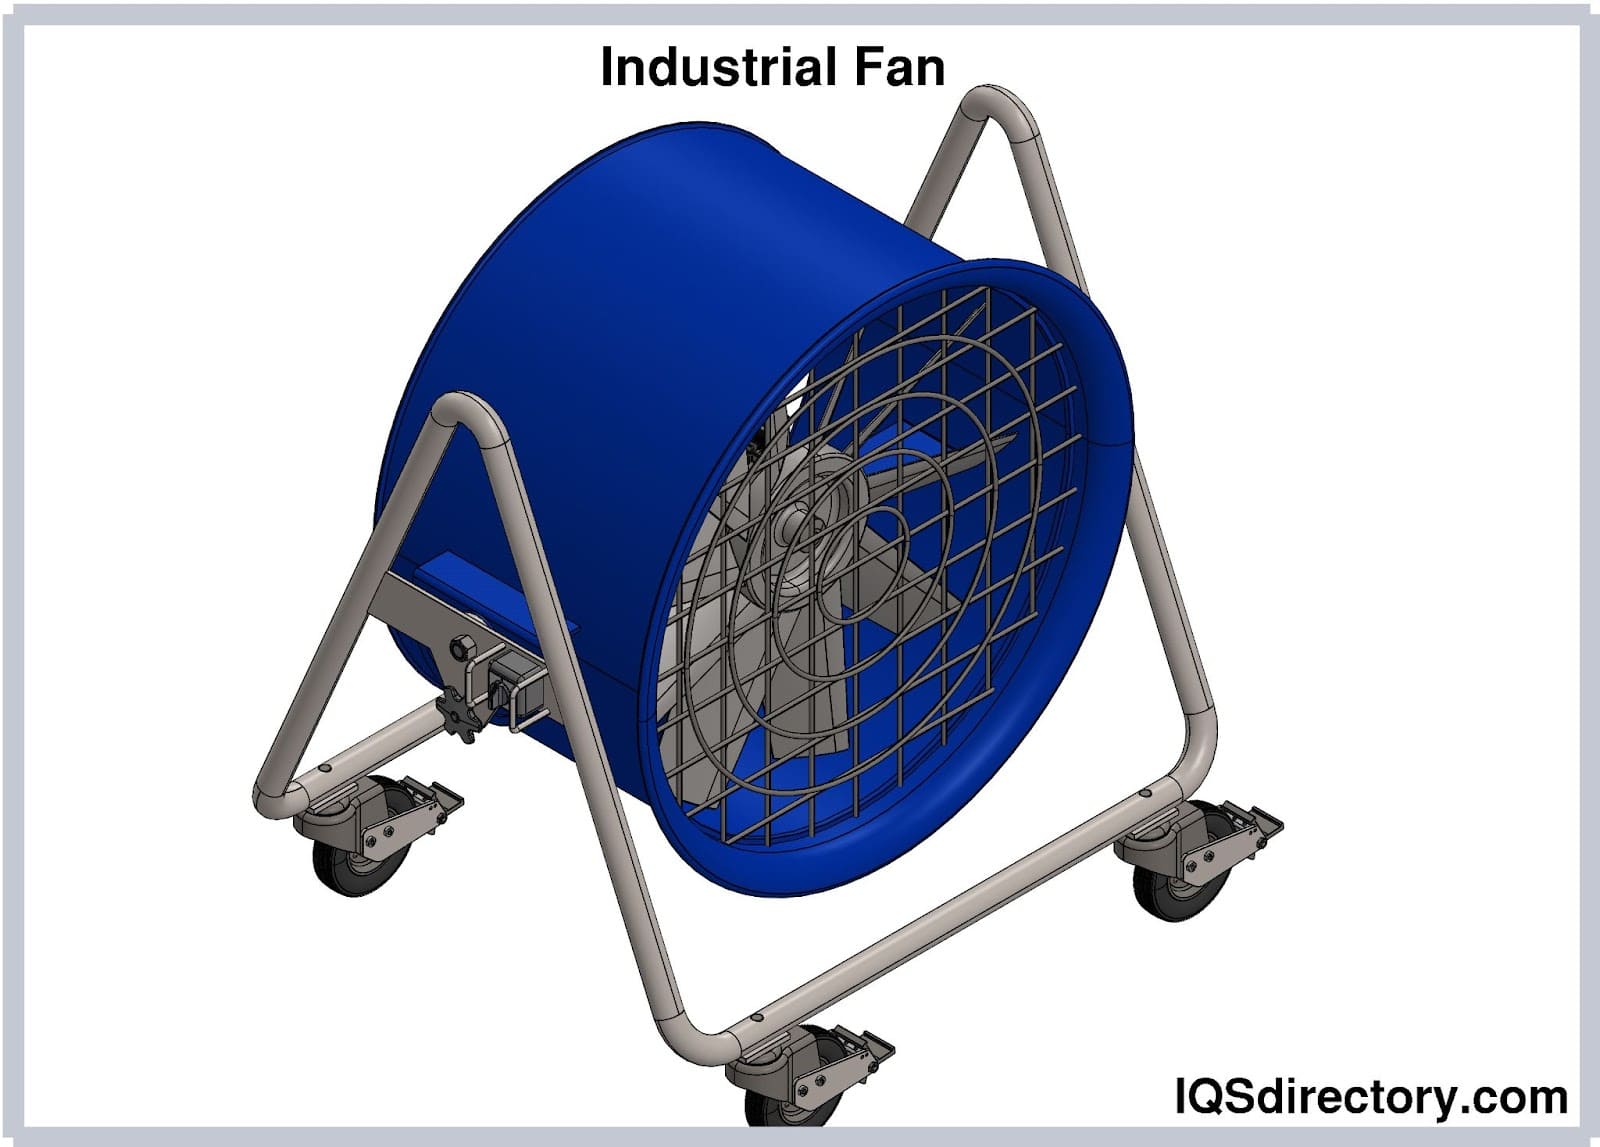 Industrial fan How to choose?